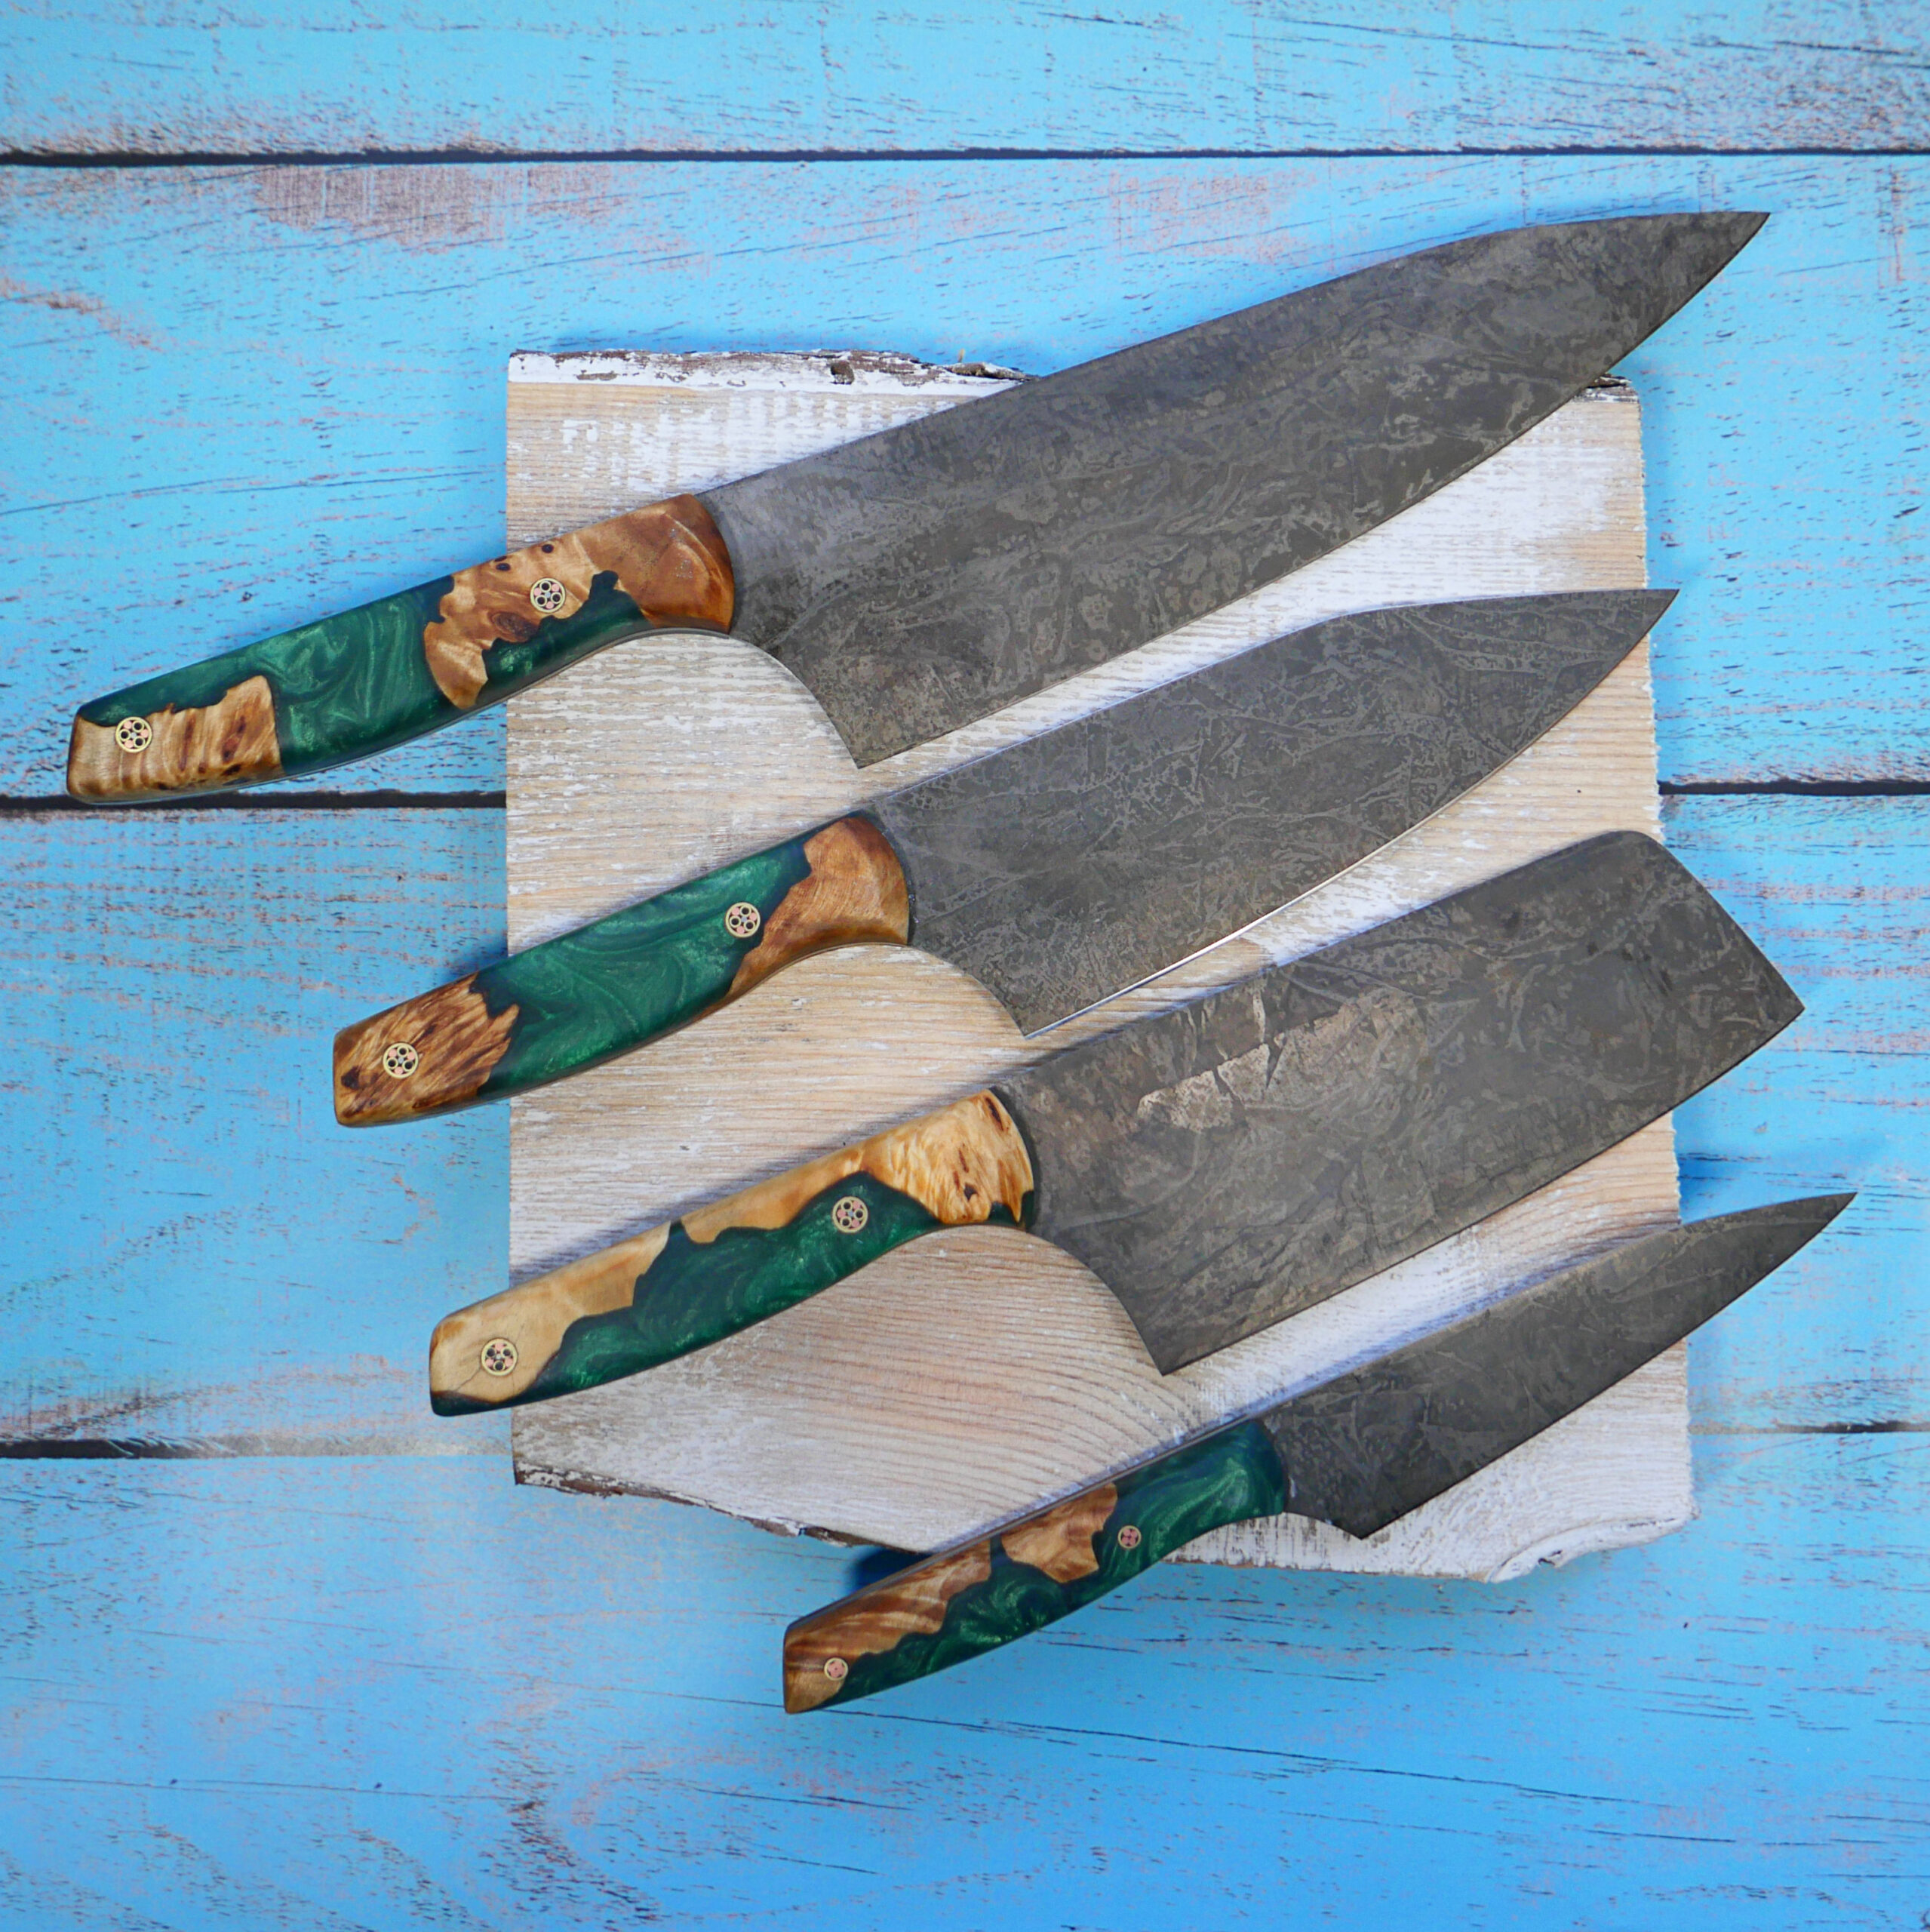 4 Piece Kitchen Chef Knife Set